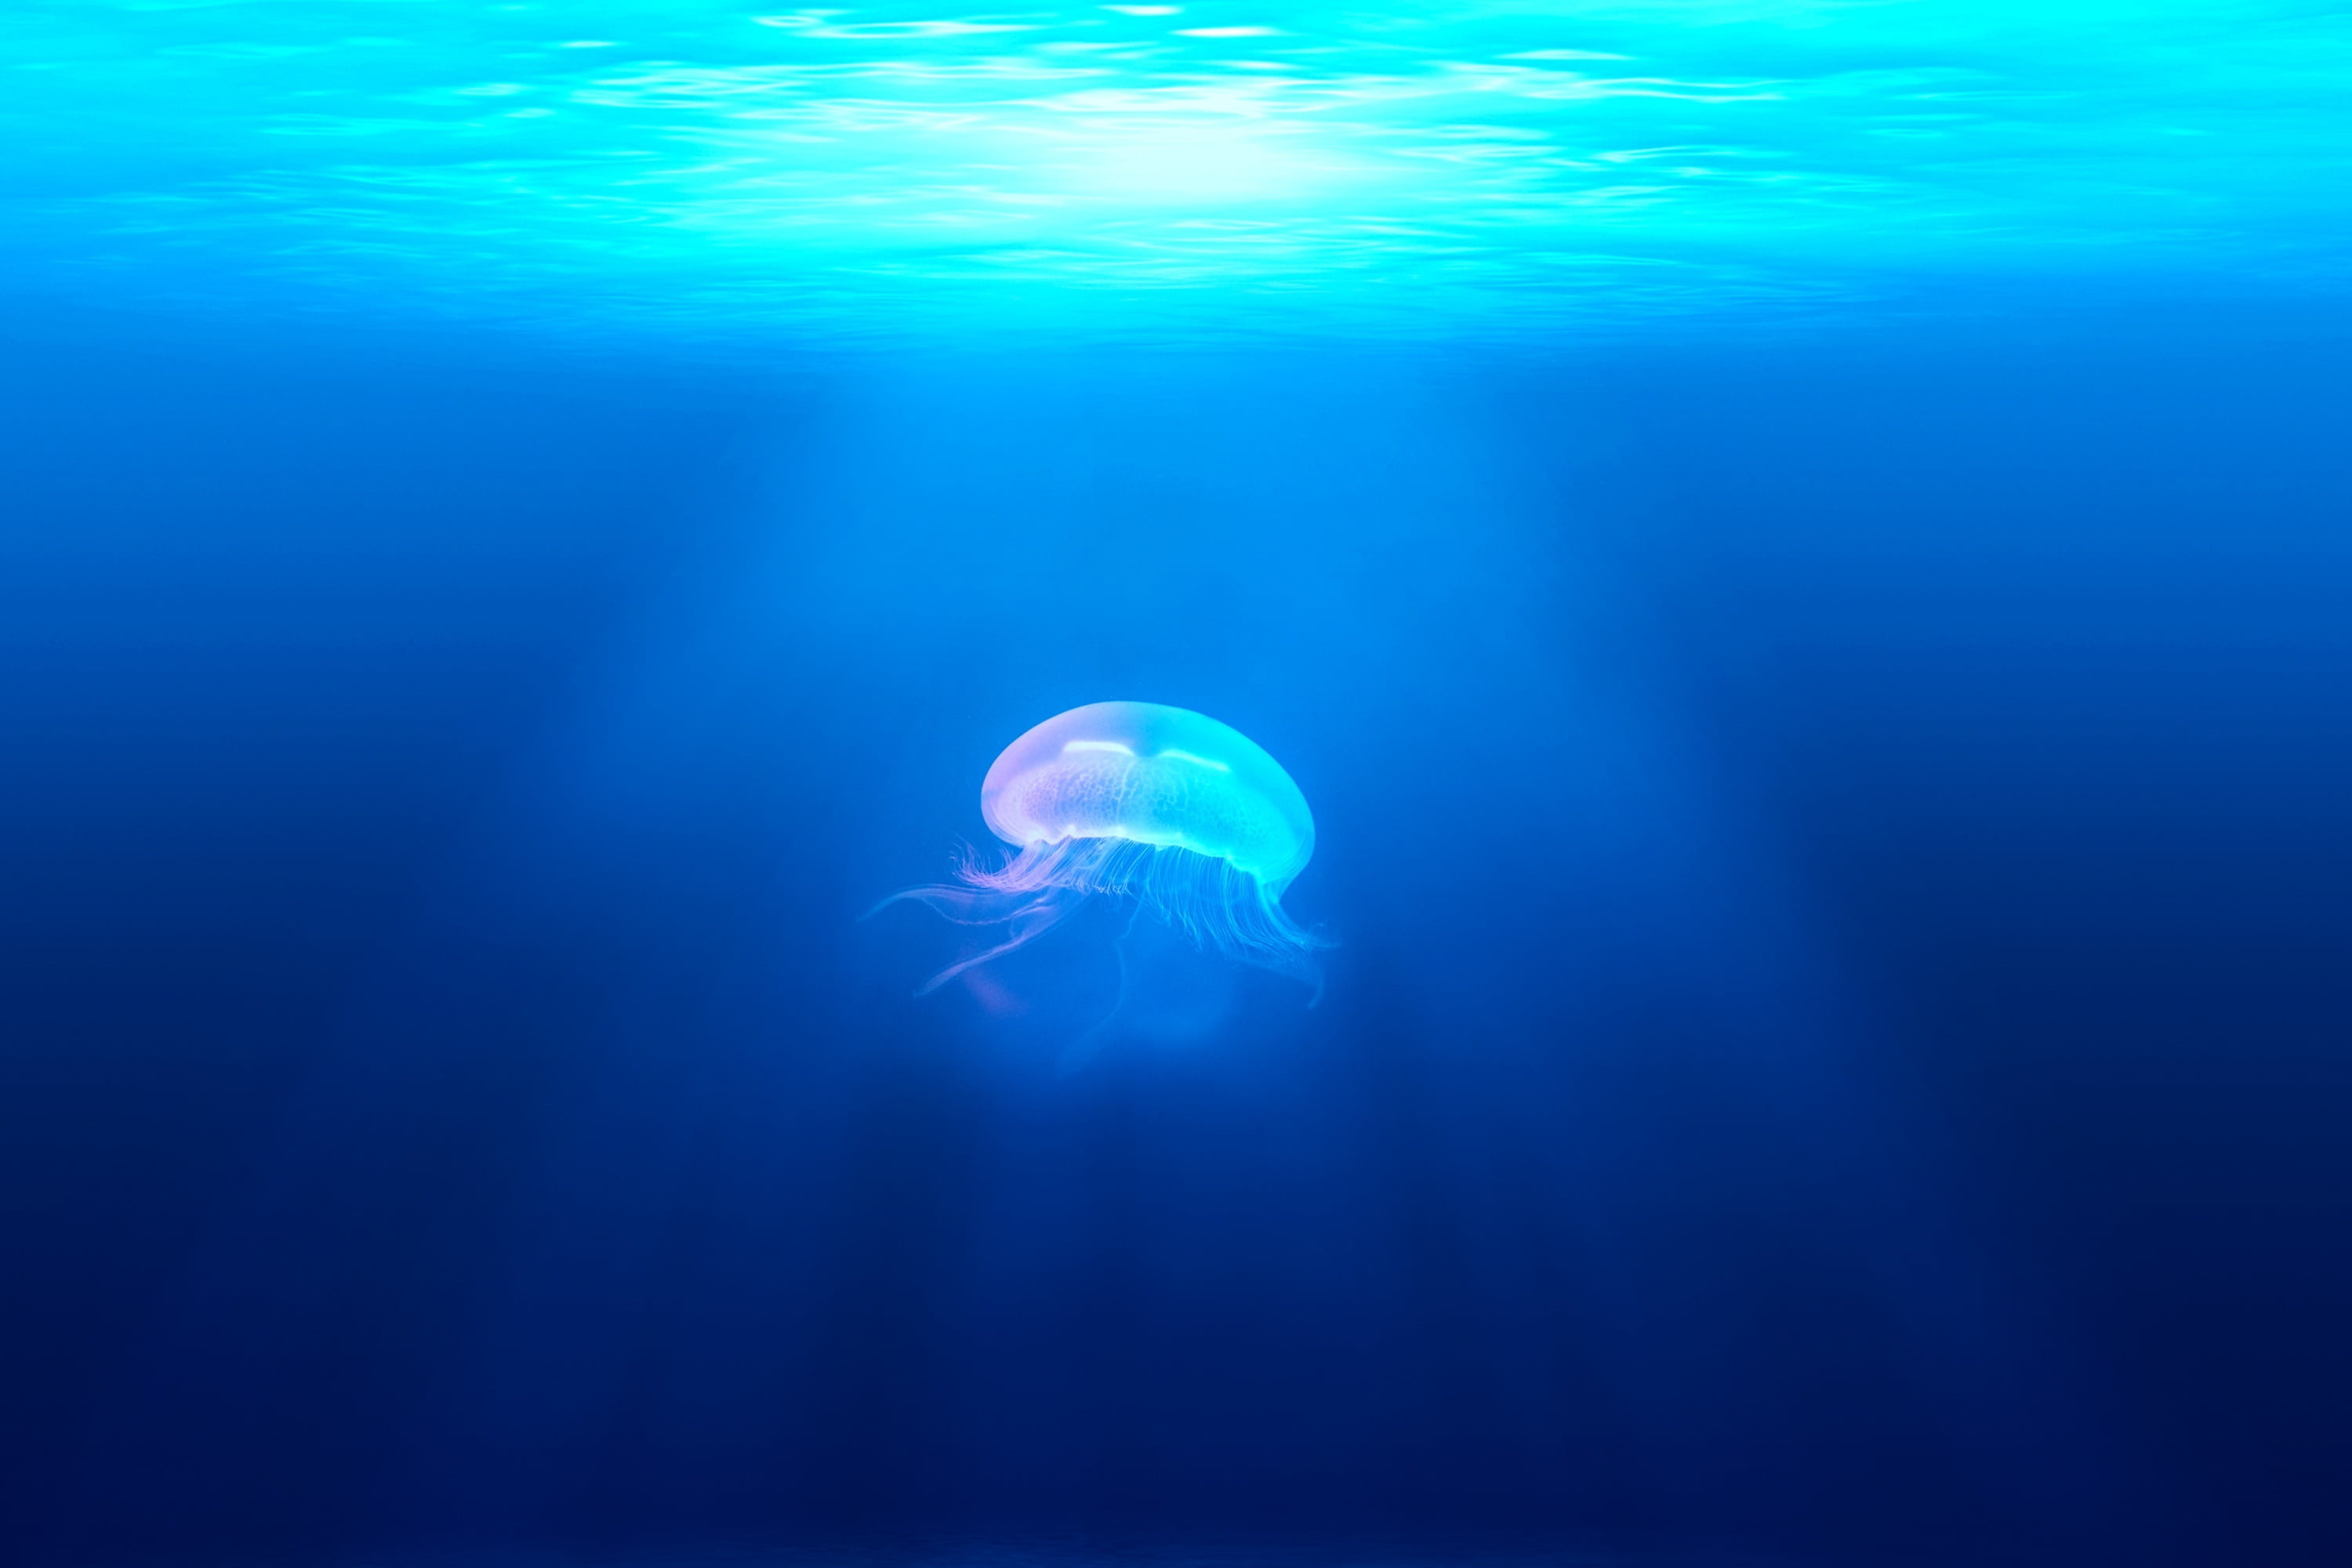 Jellyfish under the ocean